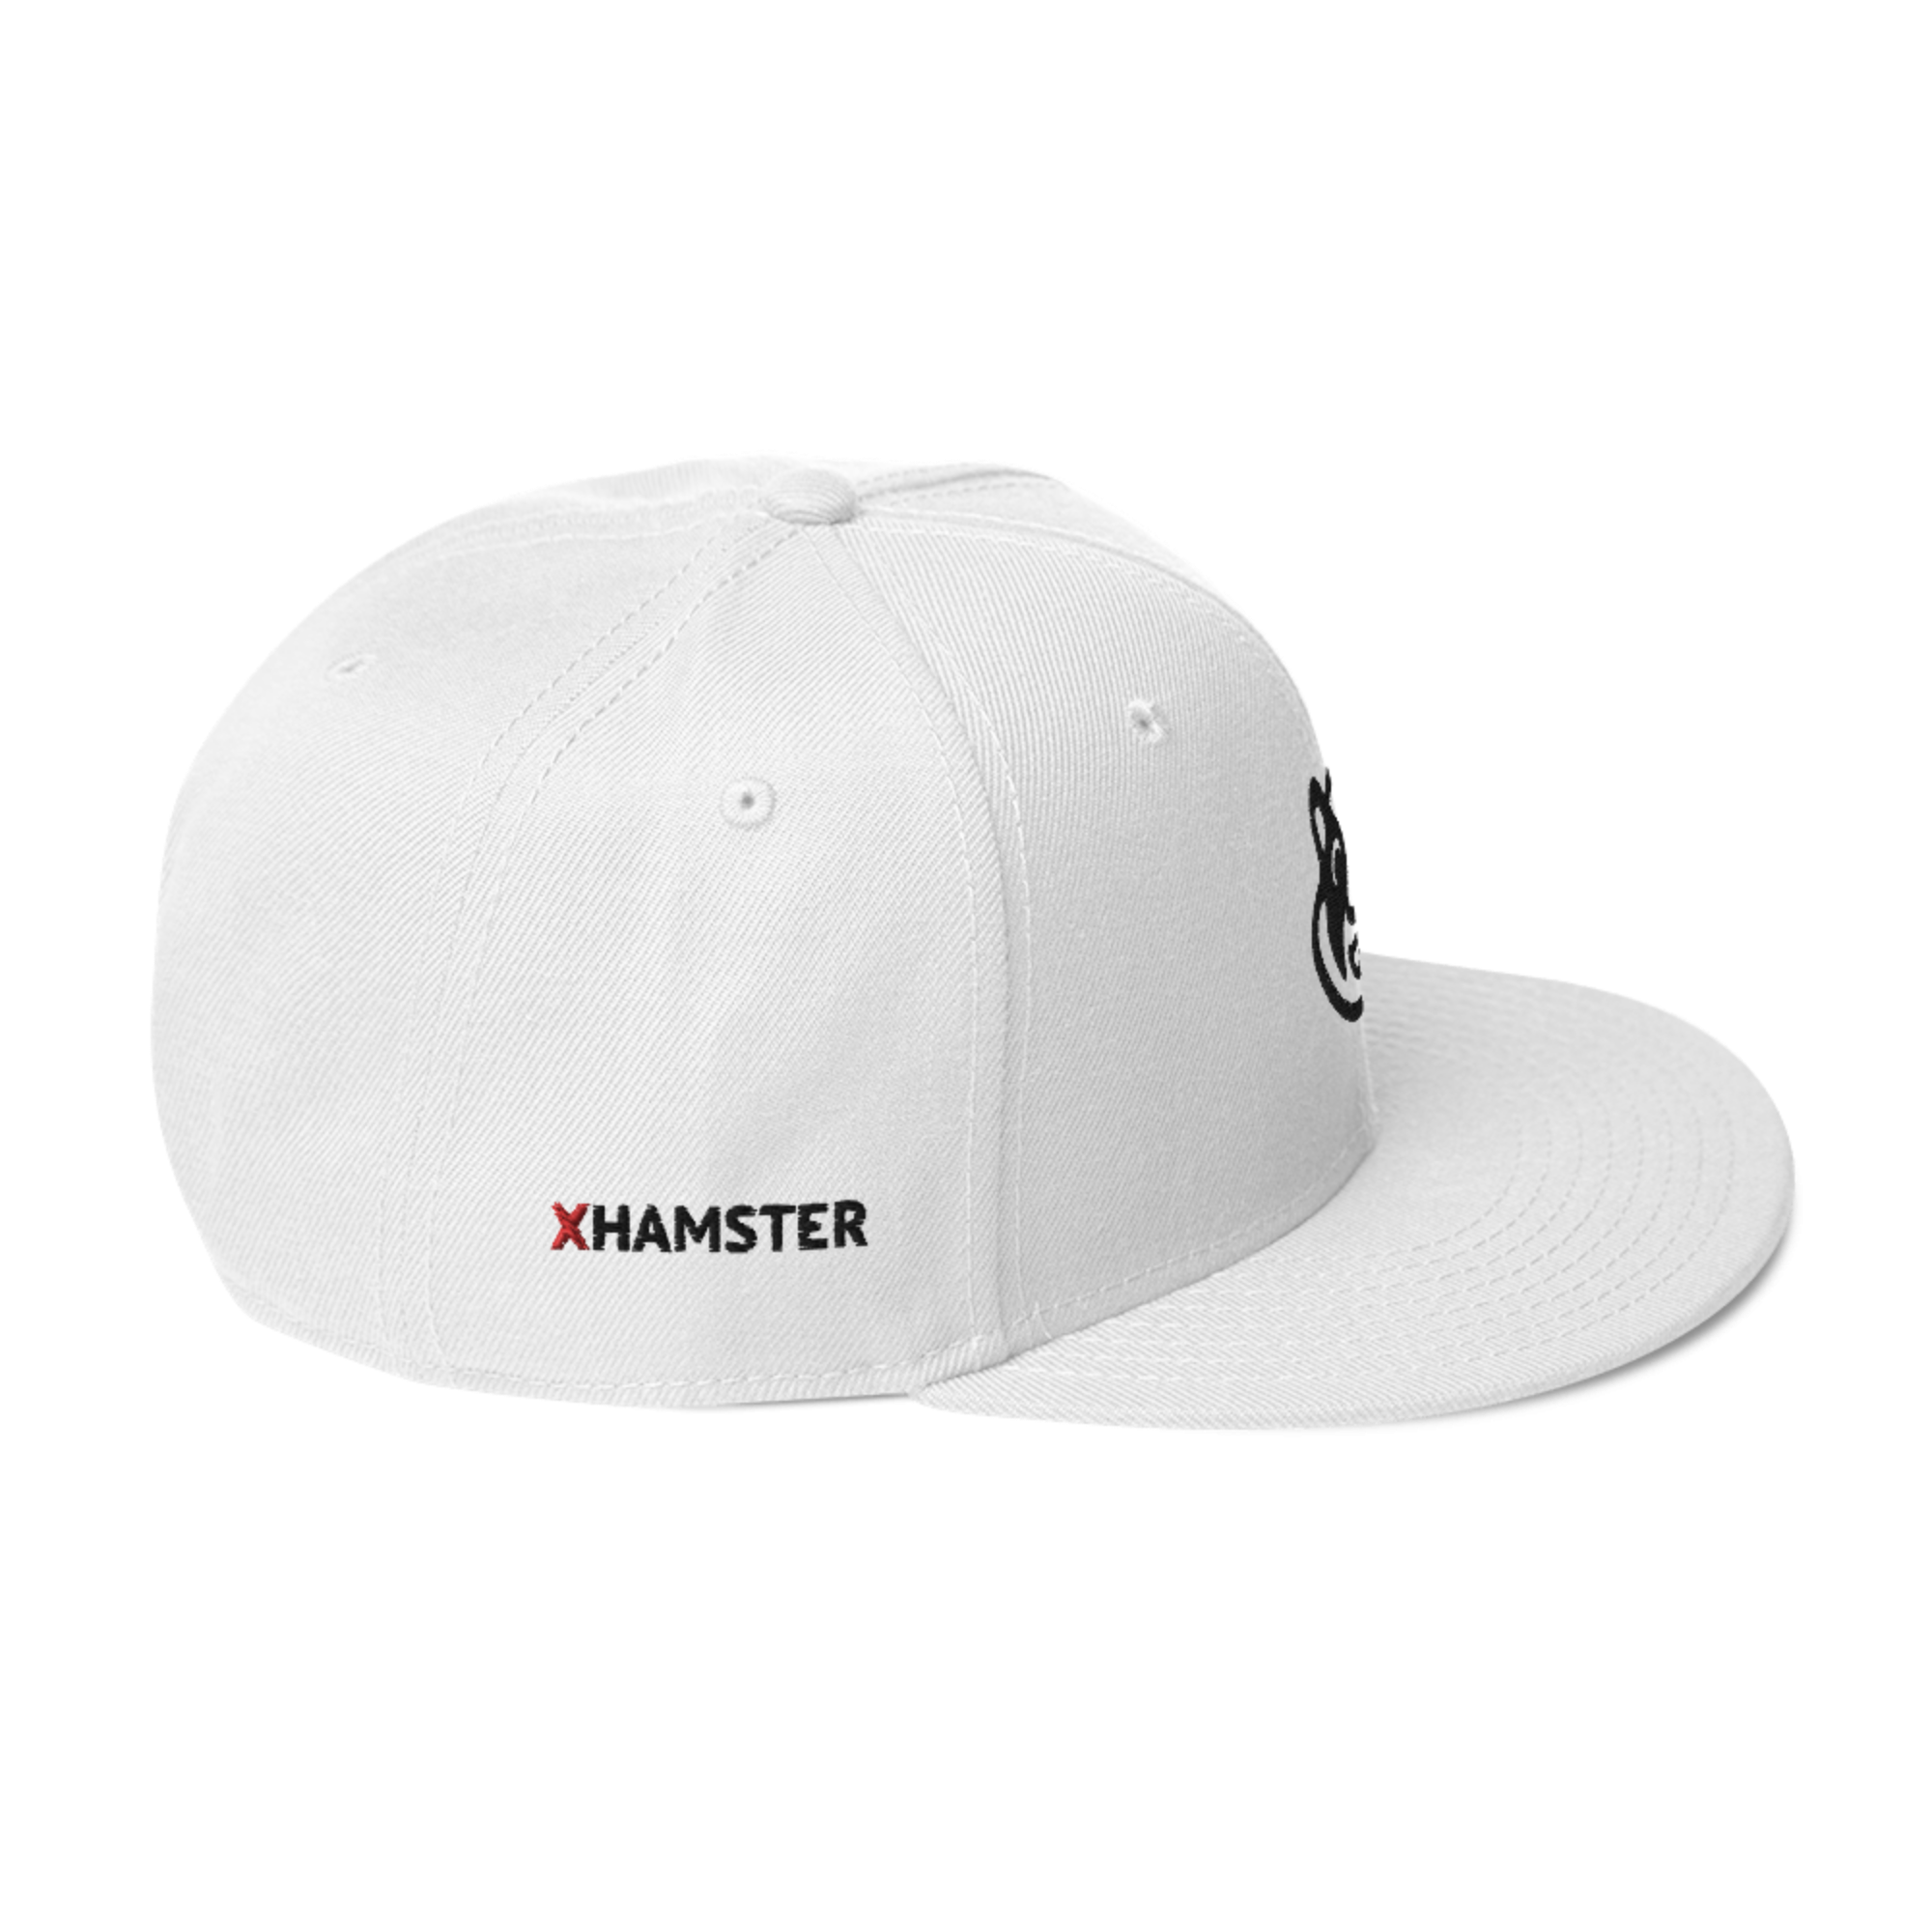 xHamster White Snapback Cap